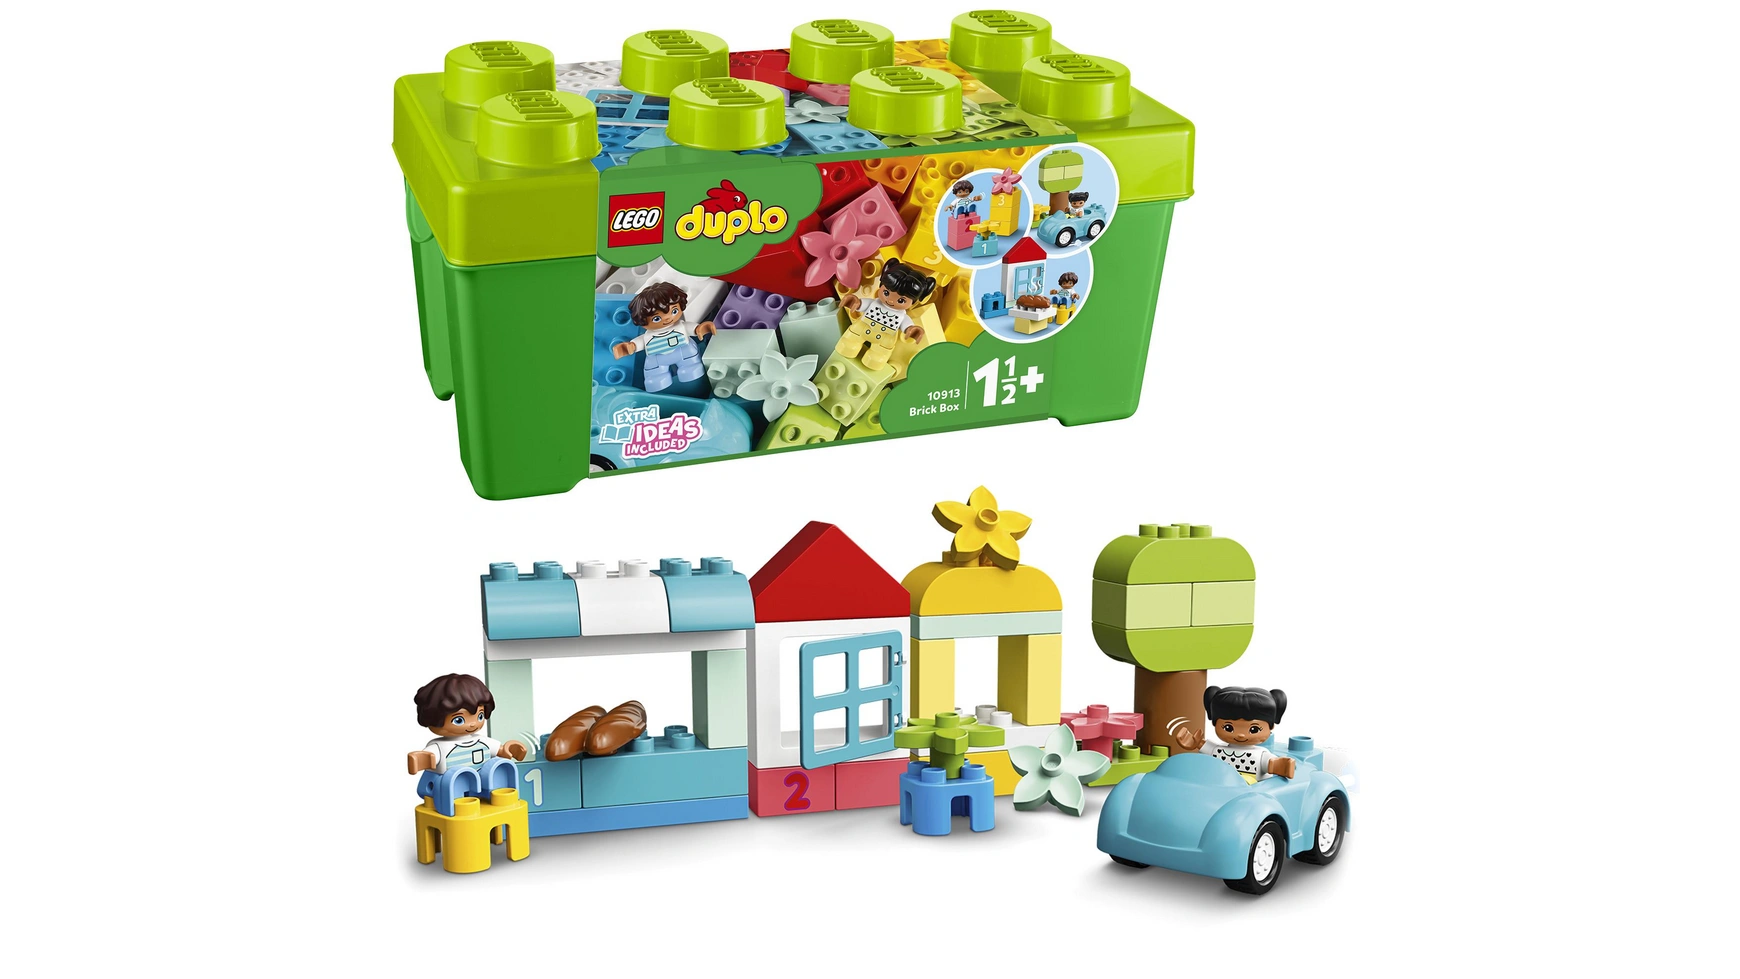 Lego DUPLO Classic Кирпичная коробка, креативная шкатулка, игрушка от 1,5 лет lego duplo classic кирпичная коробка креативная шкатулка игрушка от 1 5 лет